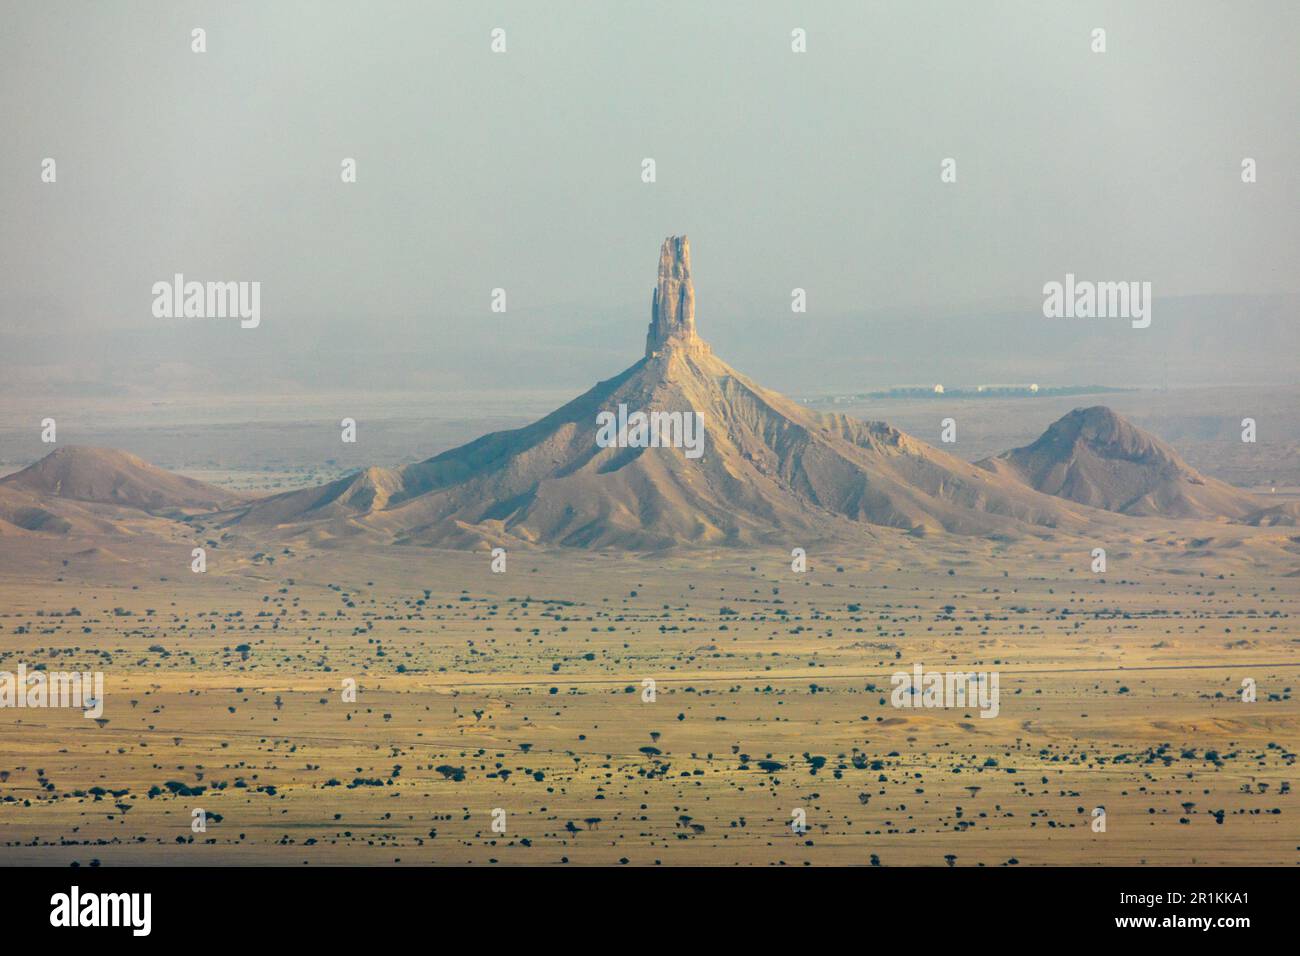 The Jabal Tuwaiq Mountains, with desert landscape, Riyadh, Saudi Arabia Stock Photo